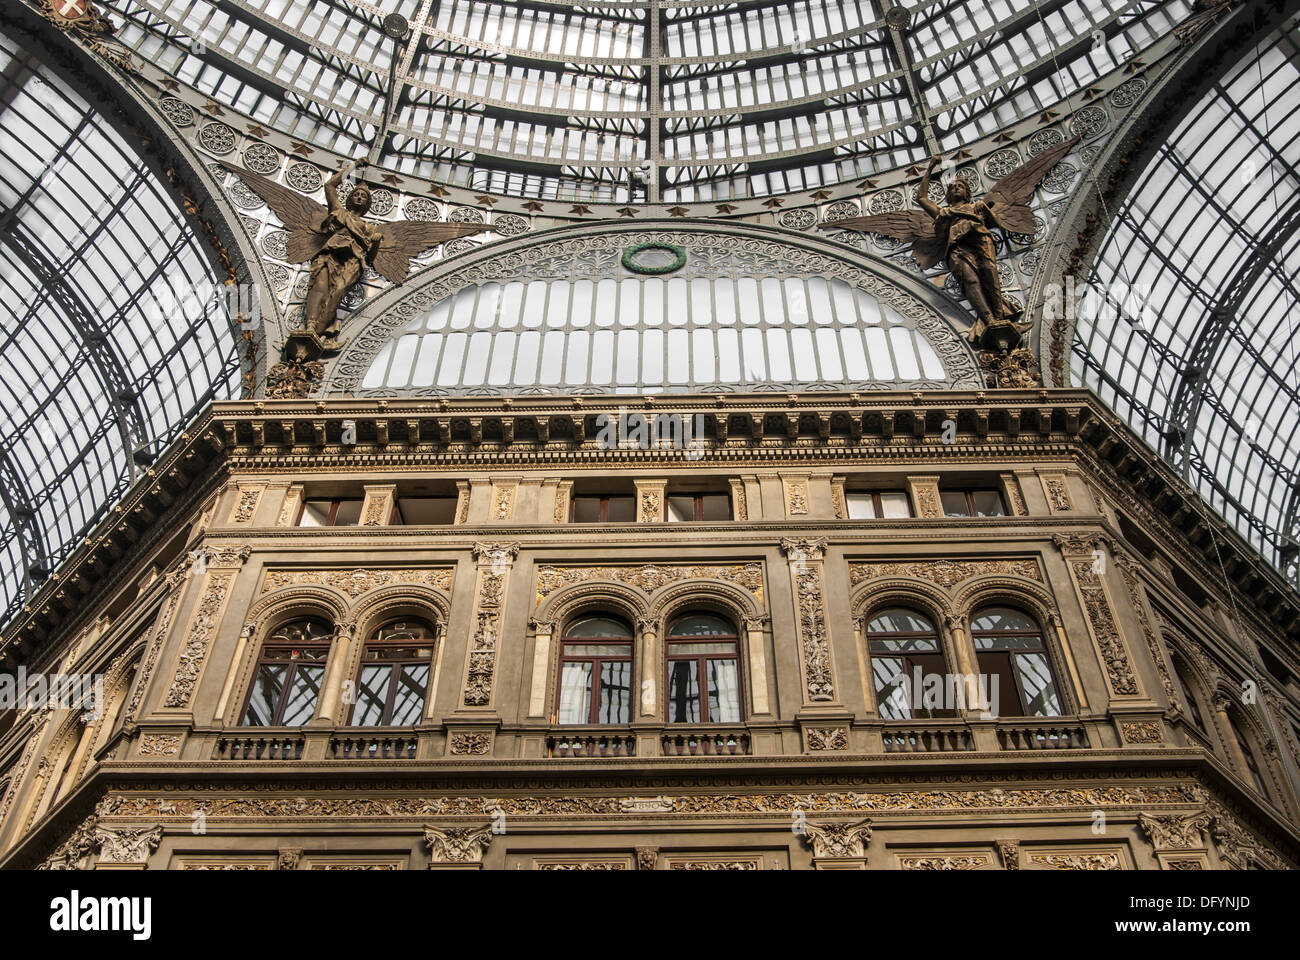 Détail de la verrière du Galleria Umberto I, un 19e siècle galerie publique à Naples, Italie Banque D'Images